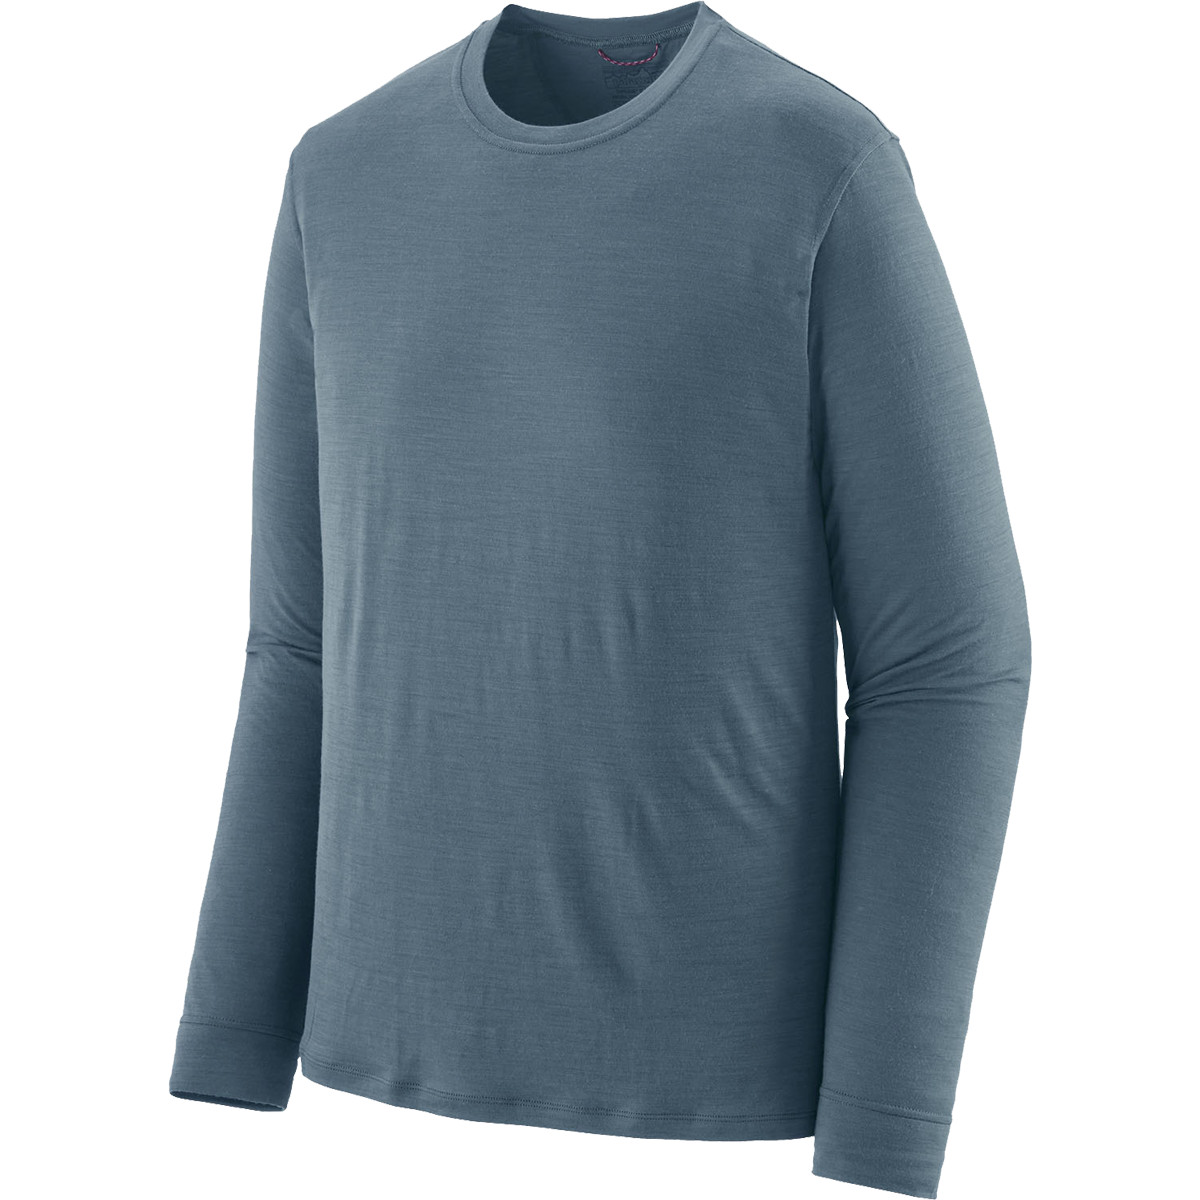 Men's Long-Sleeved Capilene Cool Merino Shirt alternate view